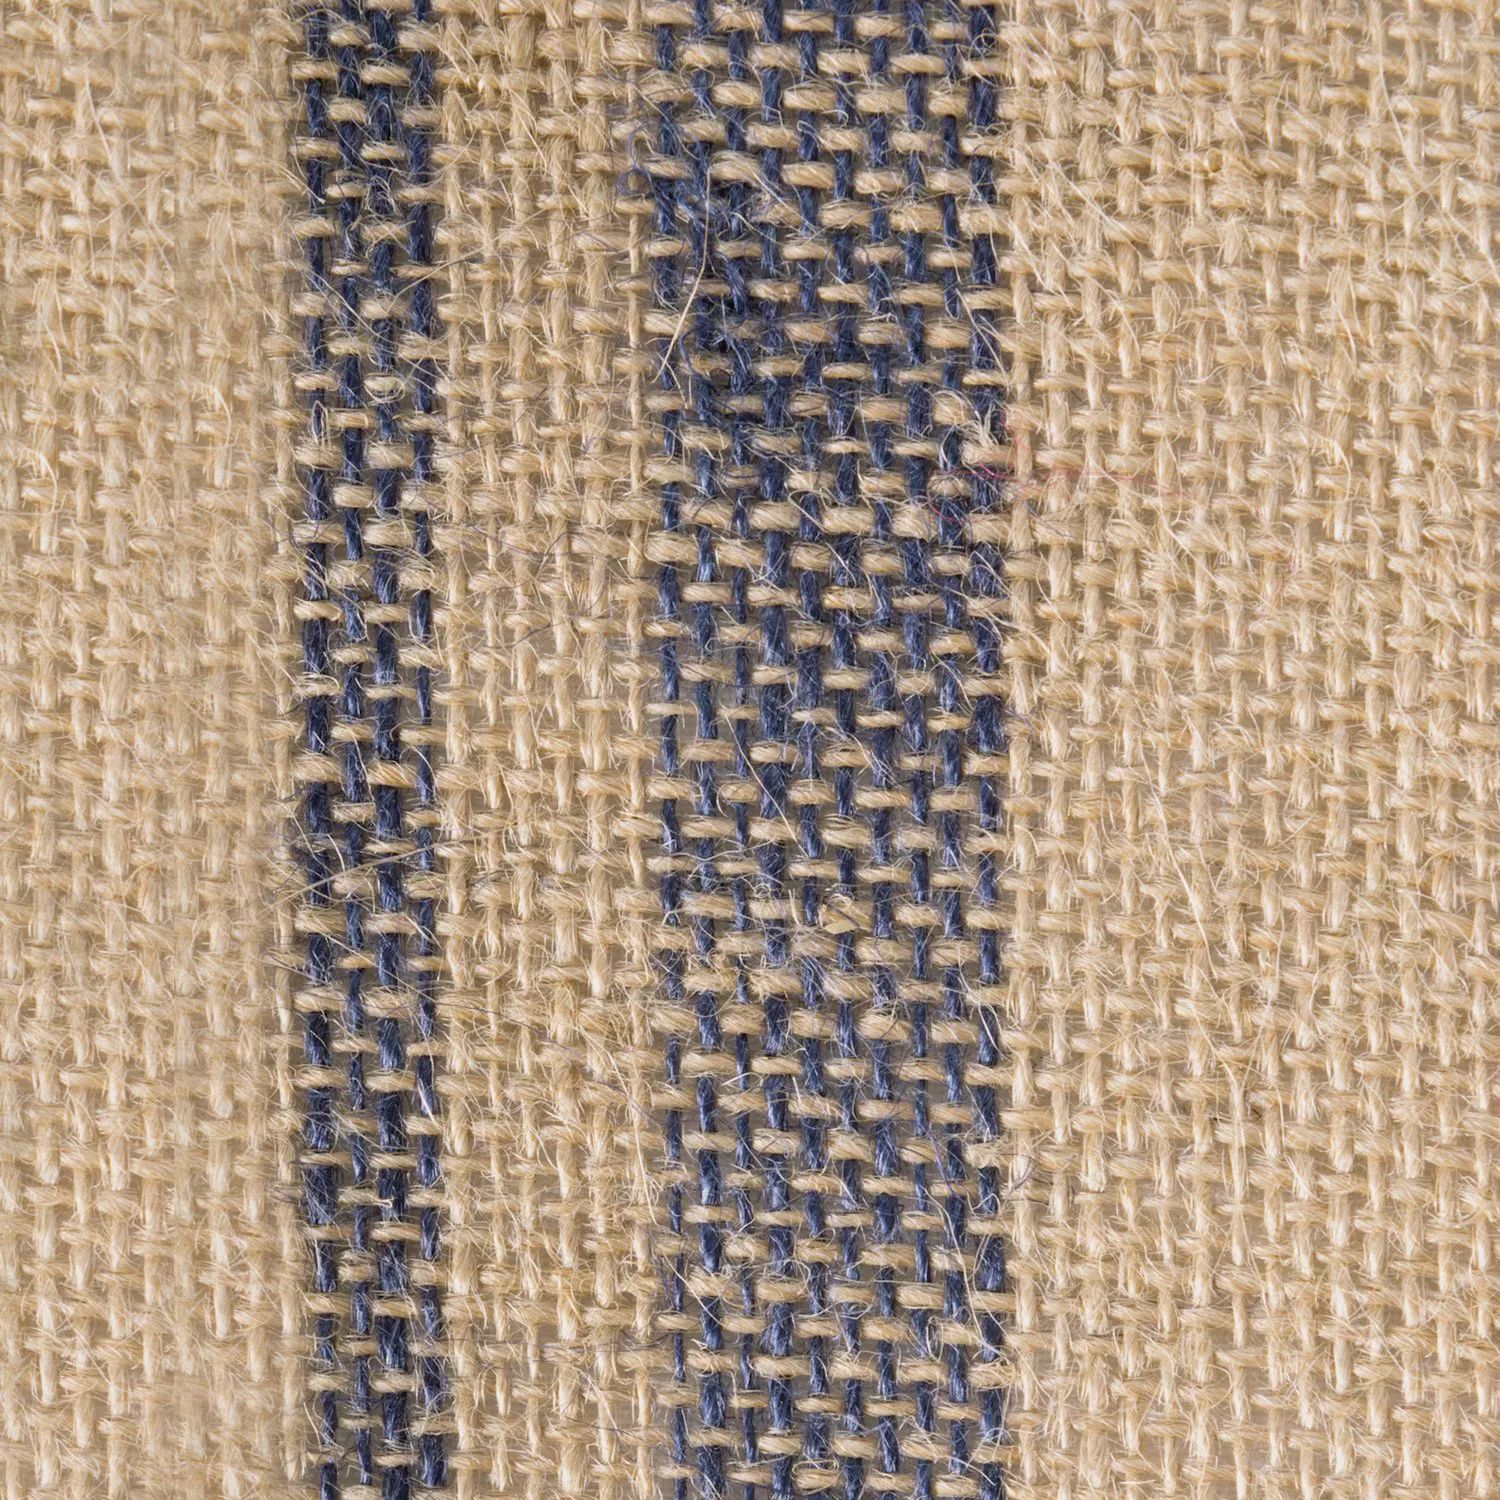 Настольная дорожка из мешковины с двойной каймой коричневого и французского синего цвета размером 14 x 108 дюймов